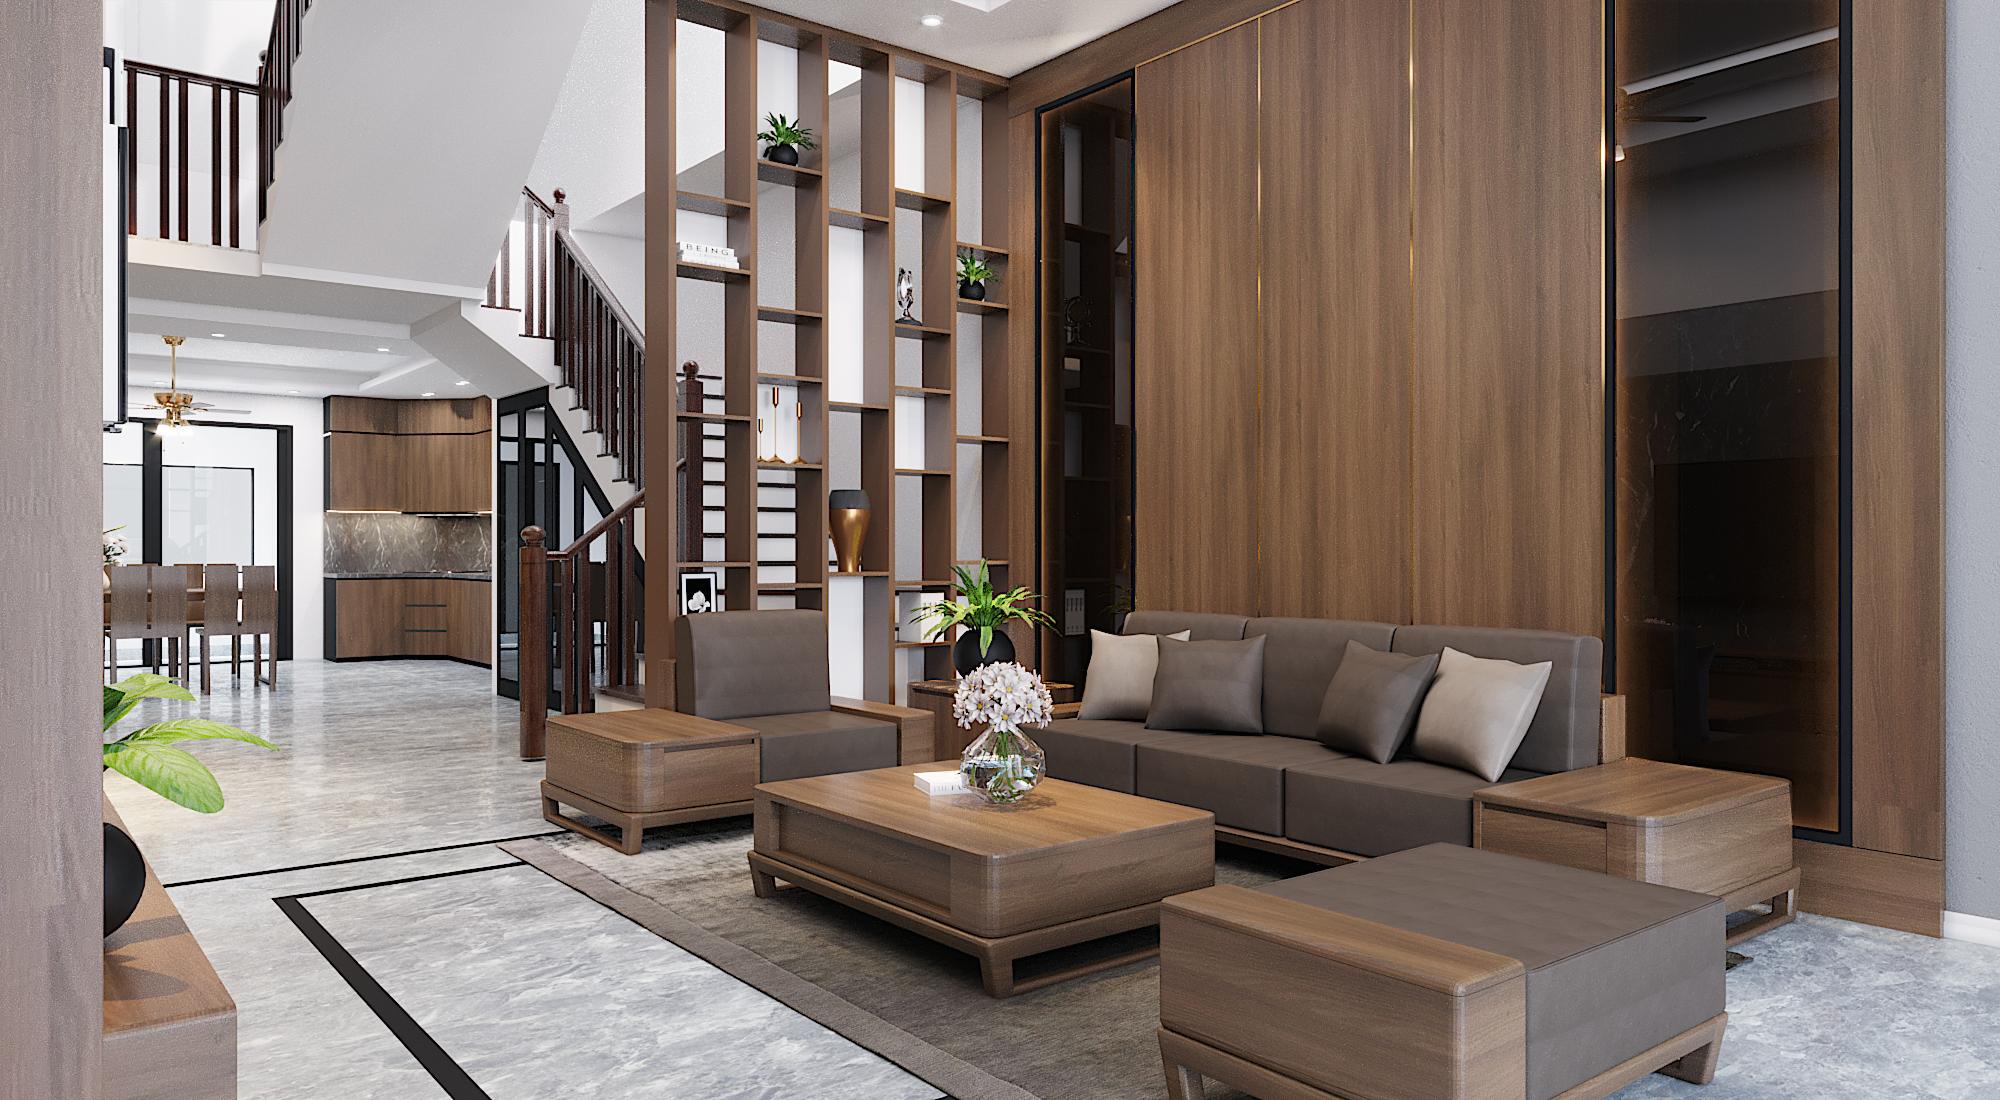 Thiết kế nội thất màu gỗ đem đến sự sang trọng, ấm áp cho ngôi nhà.